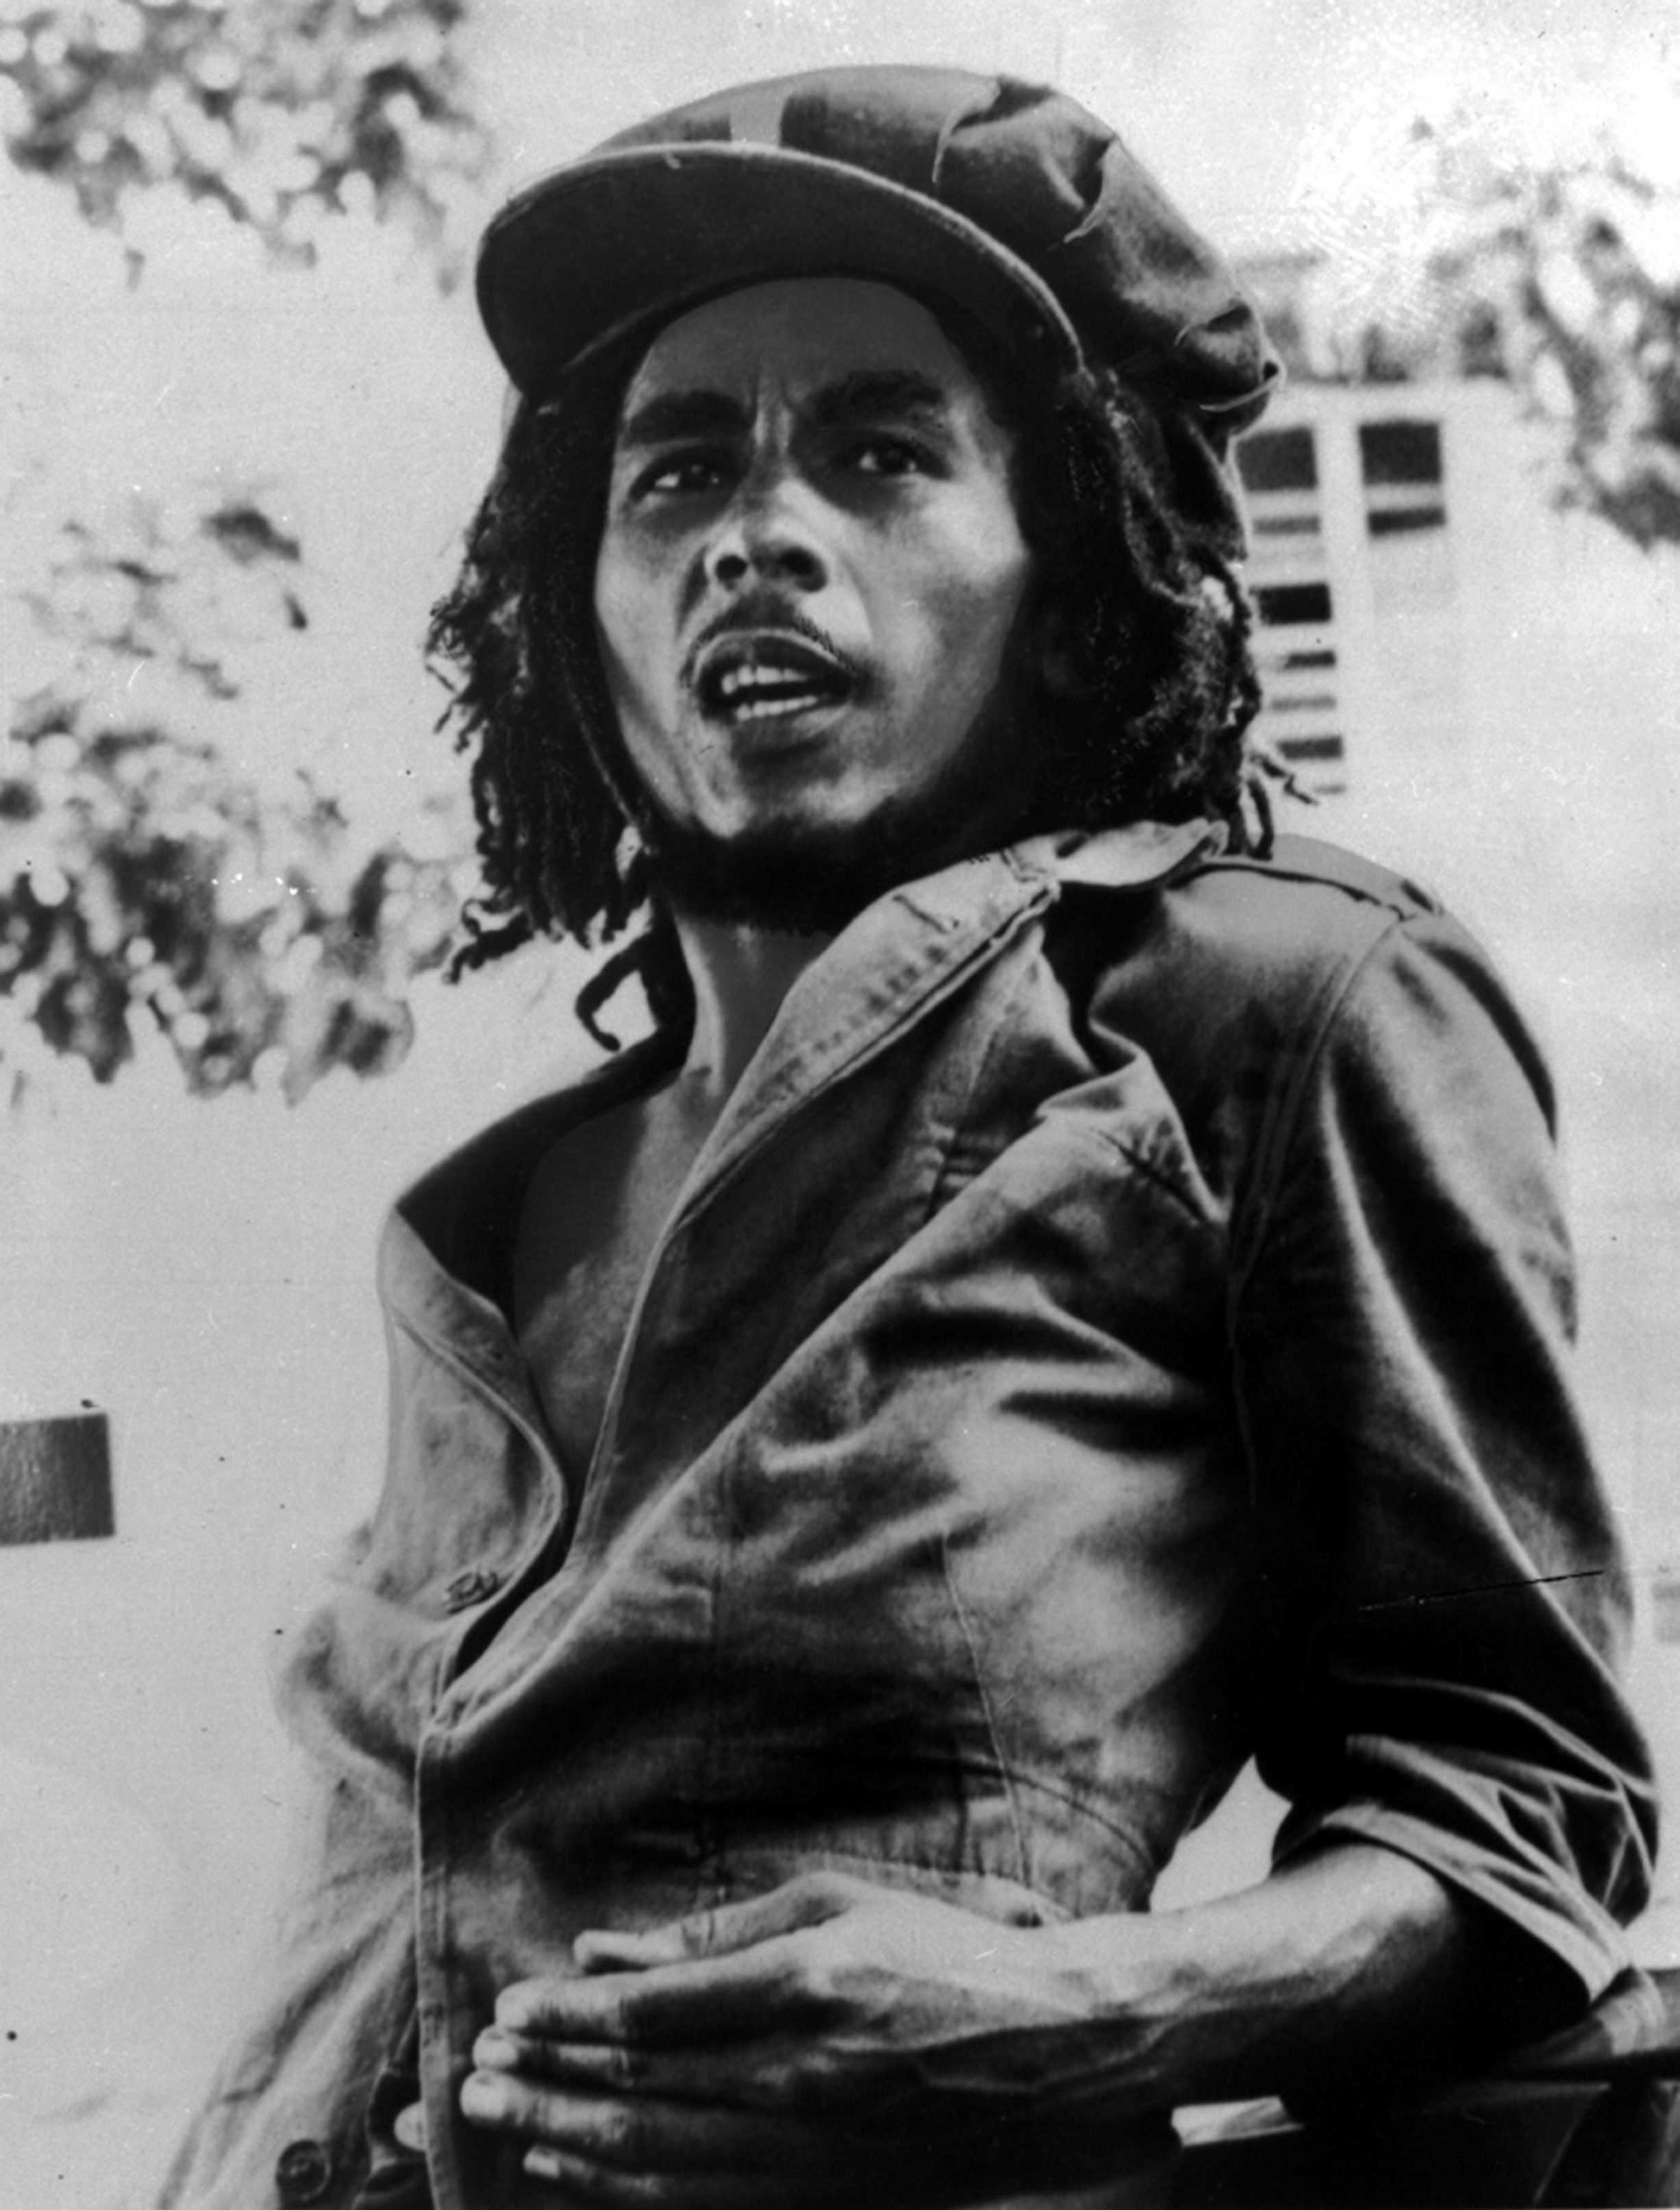 Hans födelsenamn var Robert Nesta Marley. Men han dog som Berhane Selassie.